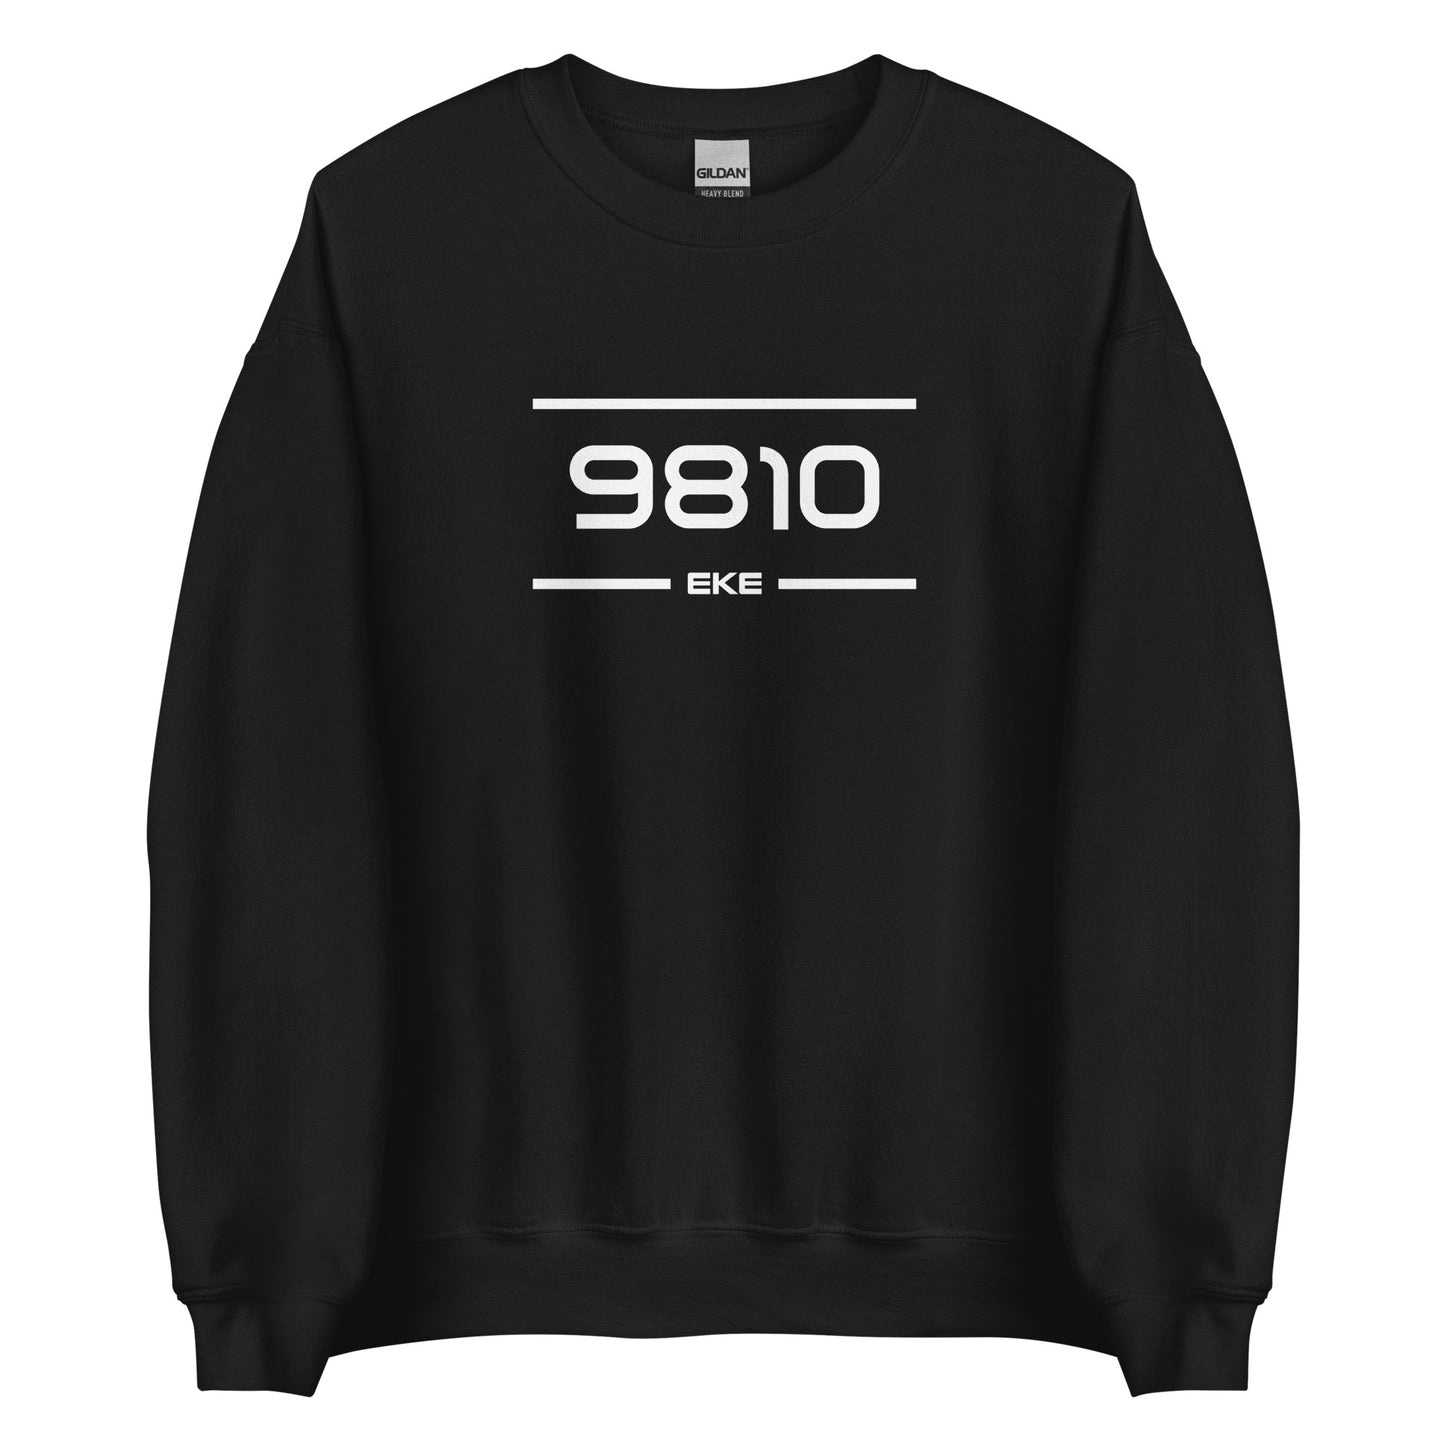 Sweater - 9810 - Eke (M/V)